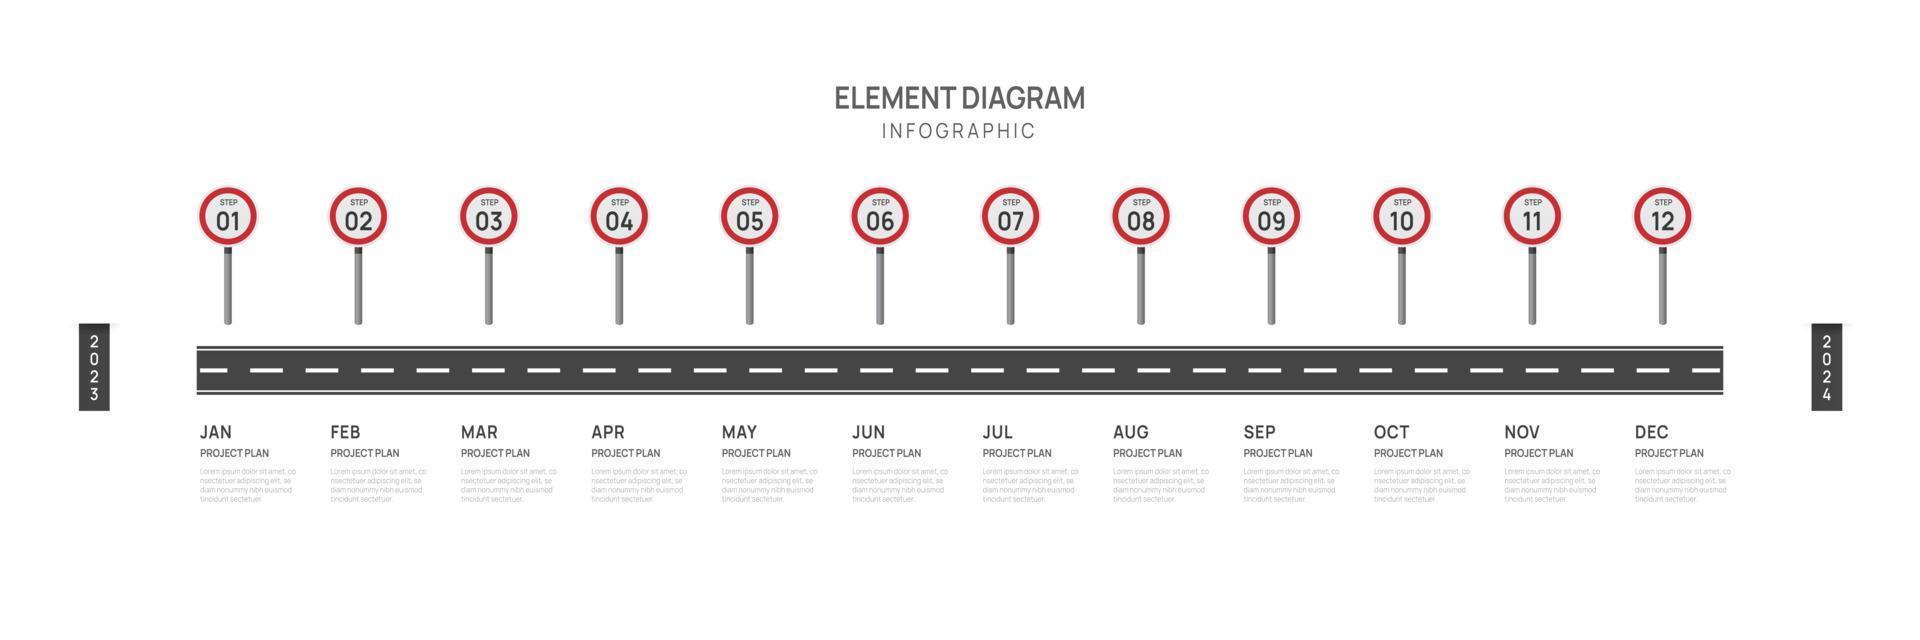 infographic färdplan mall för företag. 12 månader modern tidslinje element diagram kalender, 4 fjärdedel steg milstolpe presentation vektor infografik.